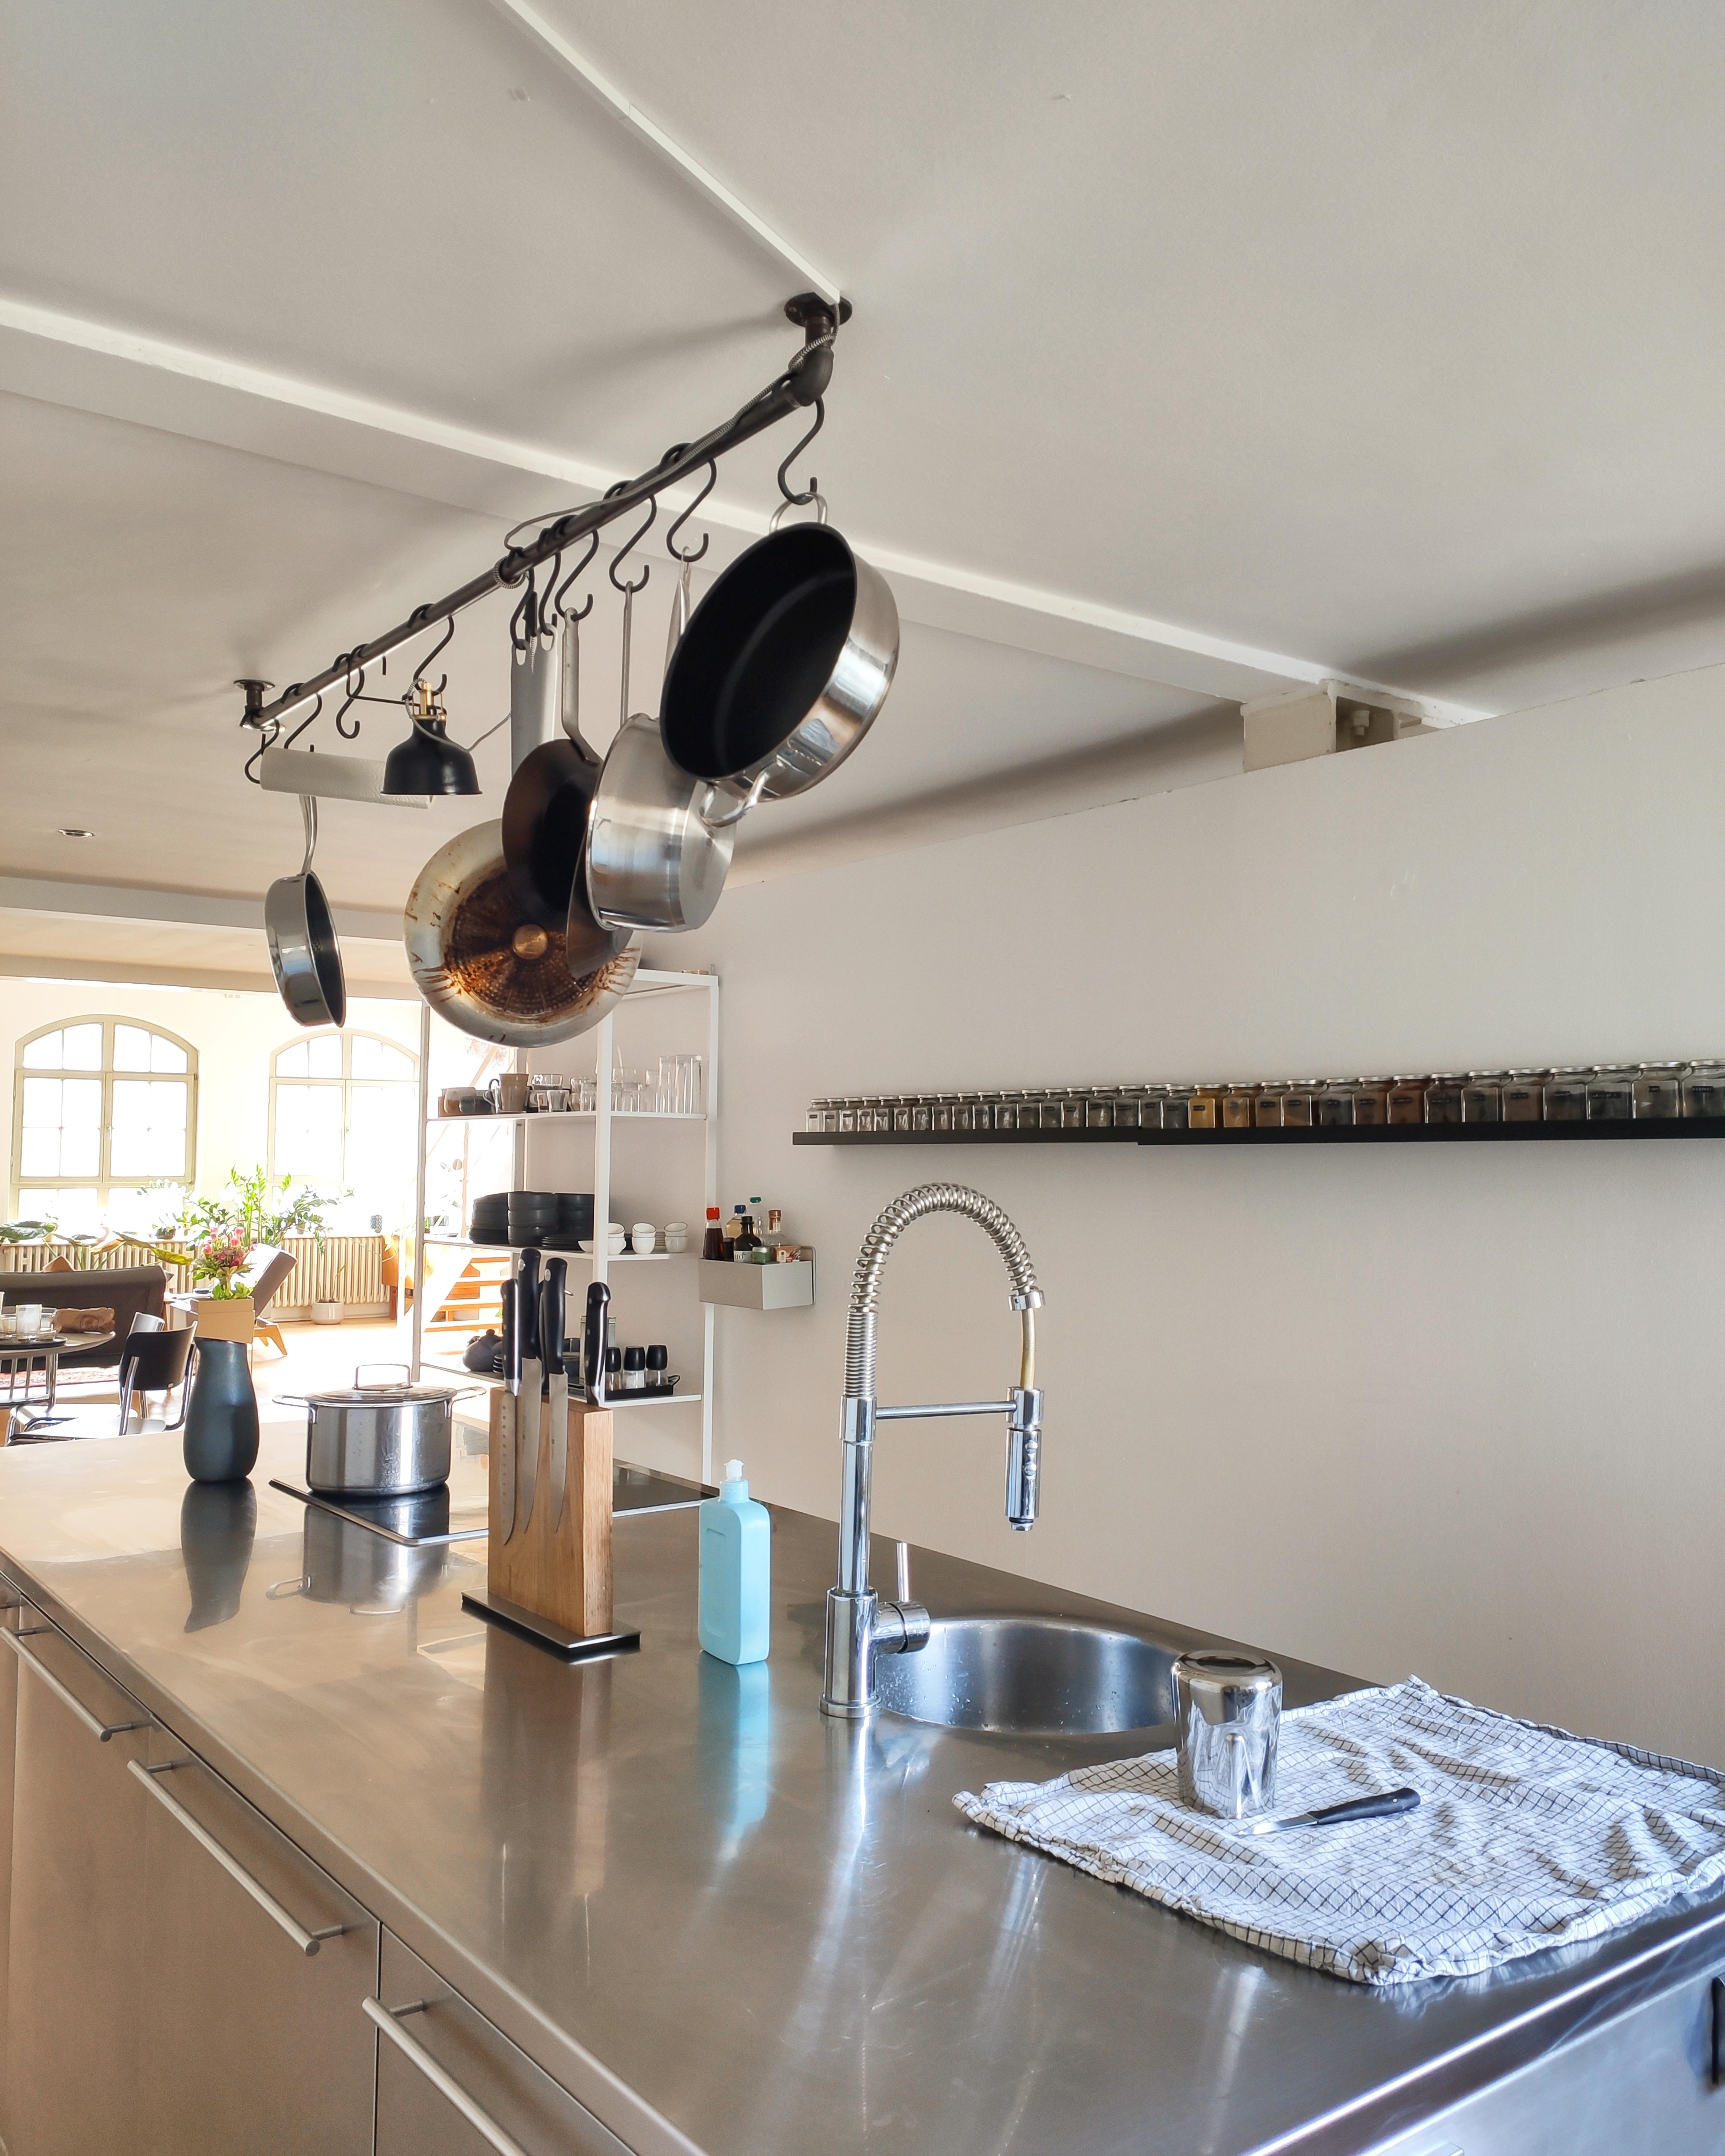 Unsere Küche ist ganz in Edelstahl ✨

#küche #küchenblock #gewürzregal #regal #offeneküche